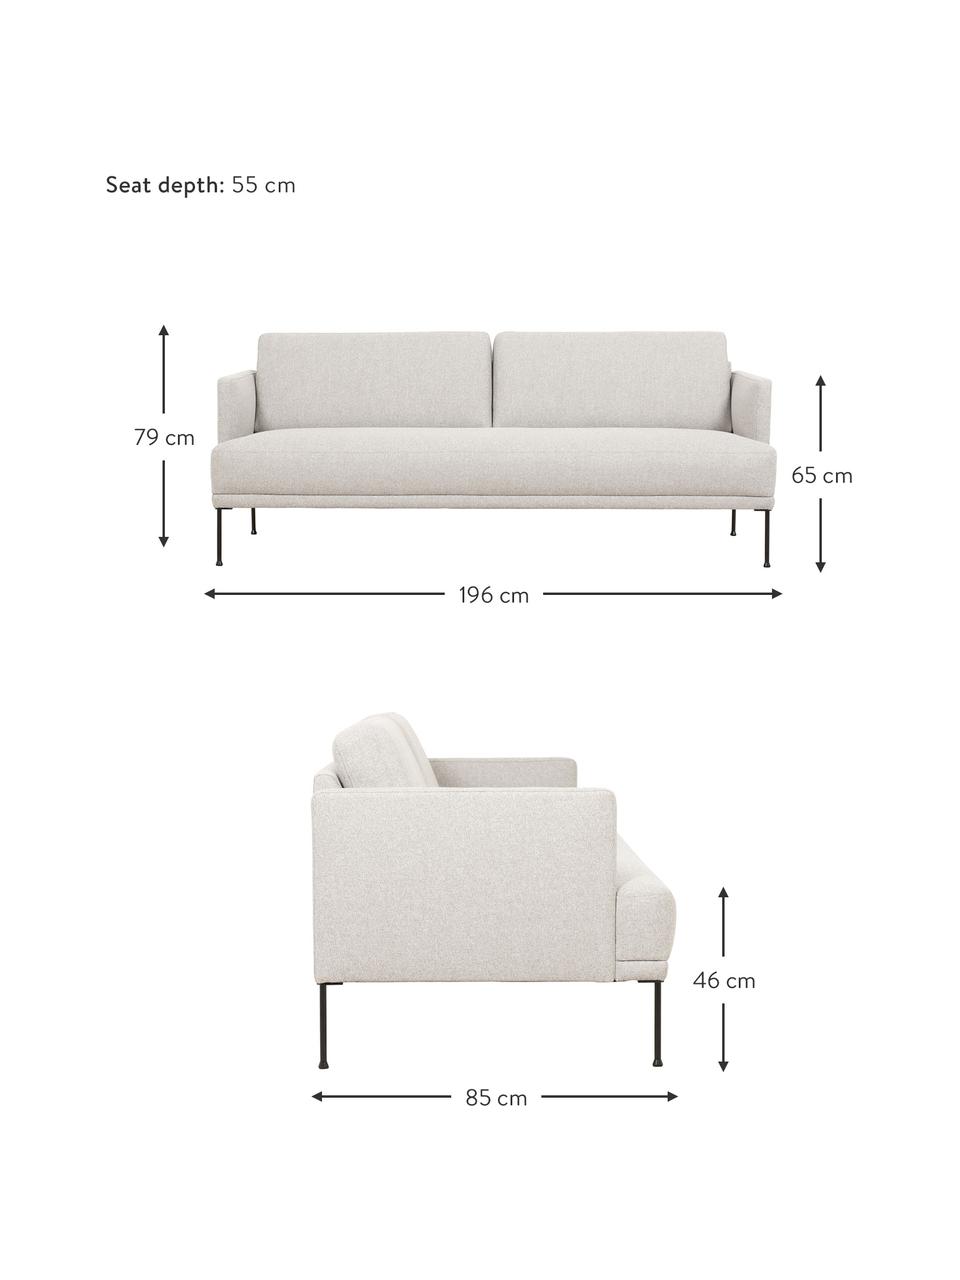 Sofa Fluente (3-Sitzer) in Beige mit Metall-Füßen, Bezug: 80% Polyester, 20% Ramie , Gestell: Massives Kiefernholz, FSC, Füße: Metall, pulverbeschichtet, Webstoff Beige, B 196 x T 85 cm